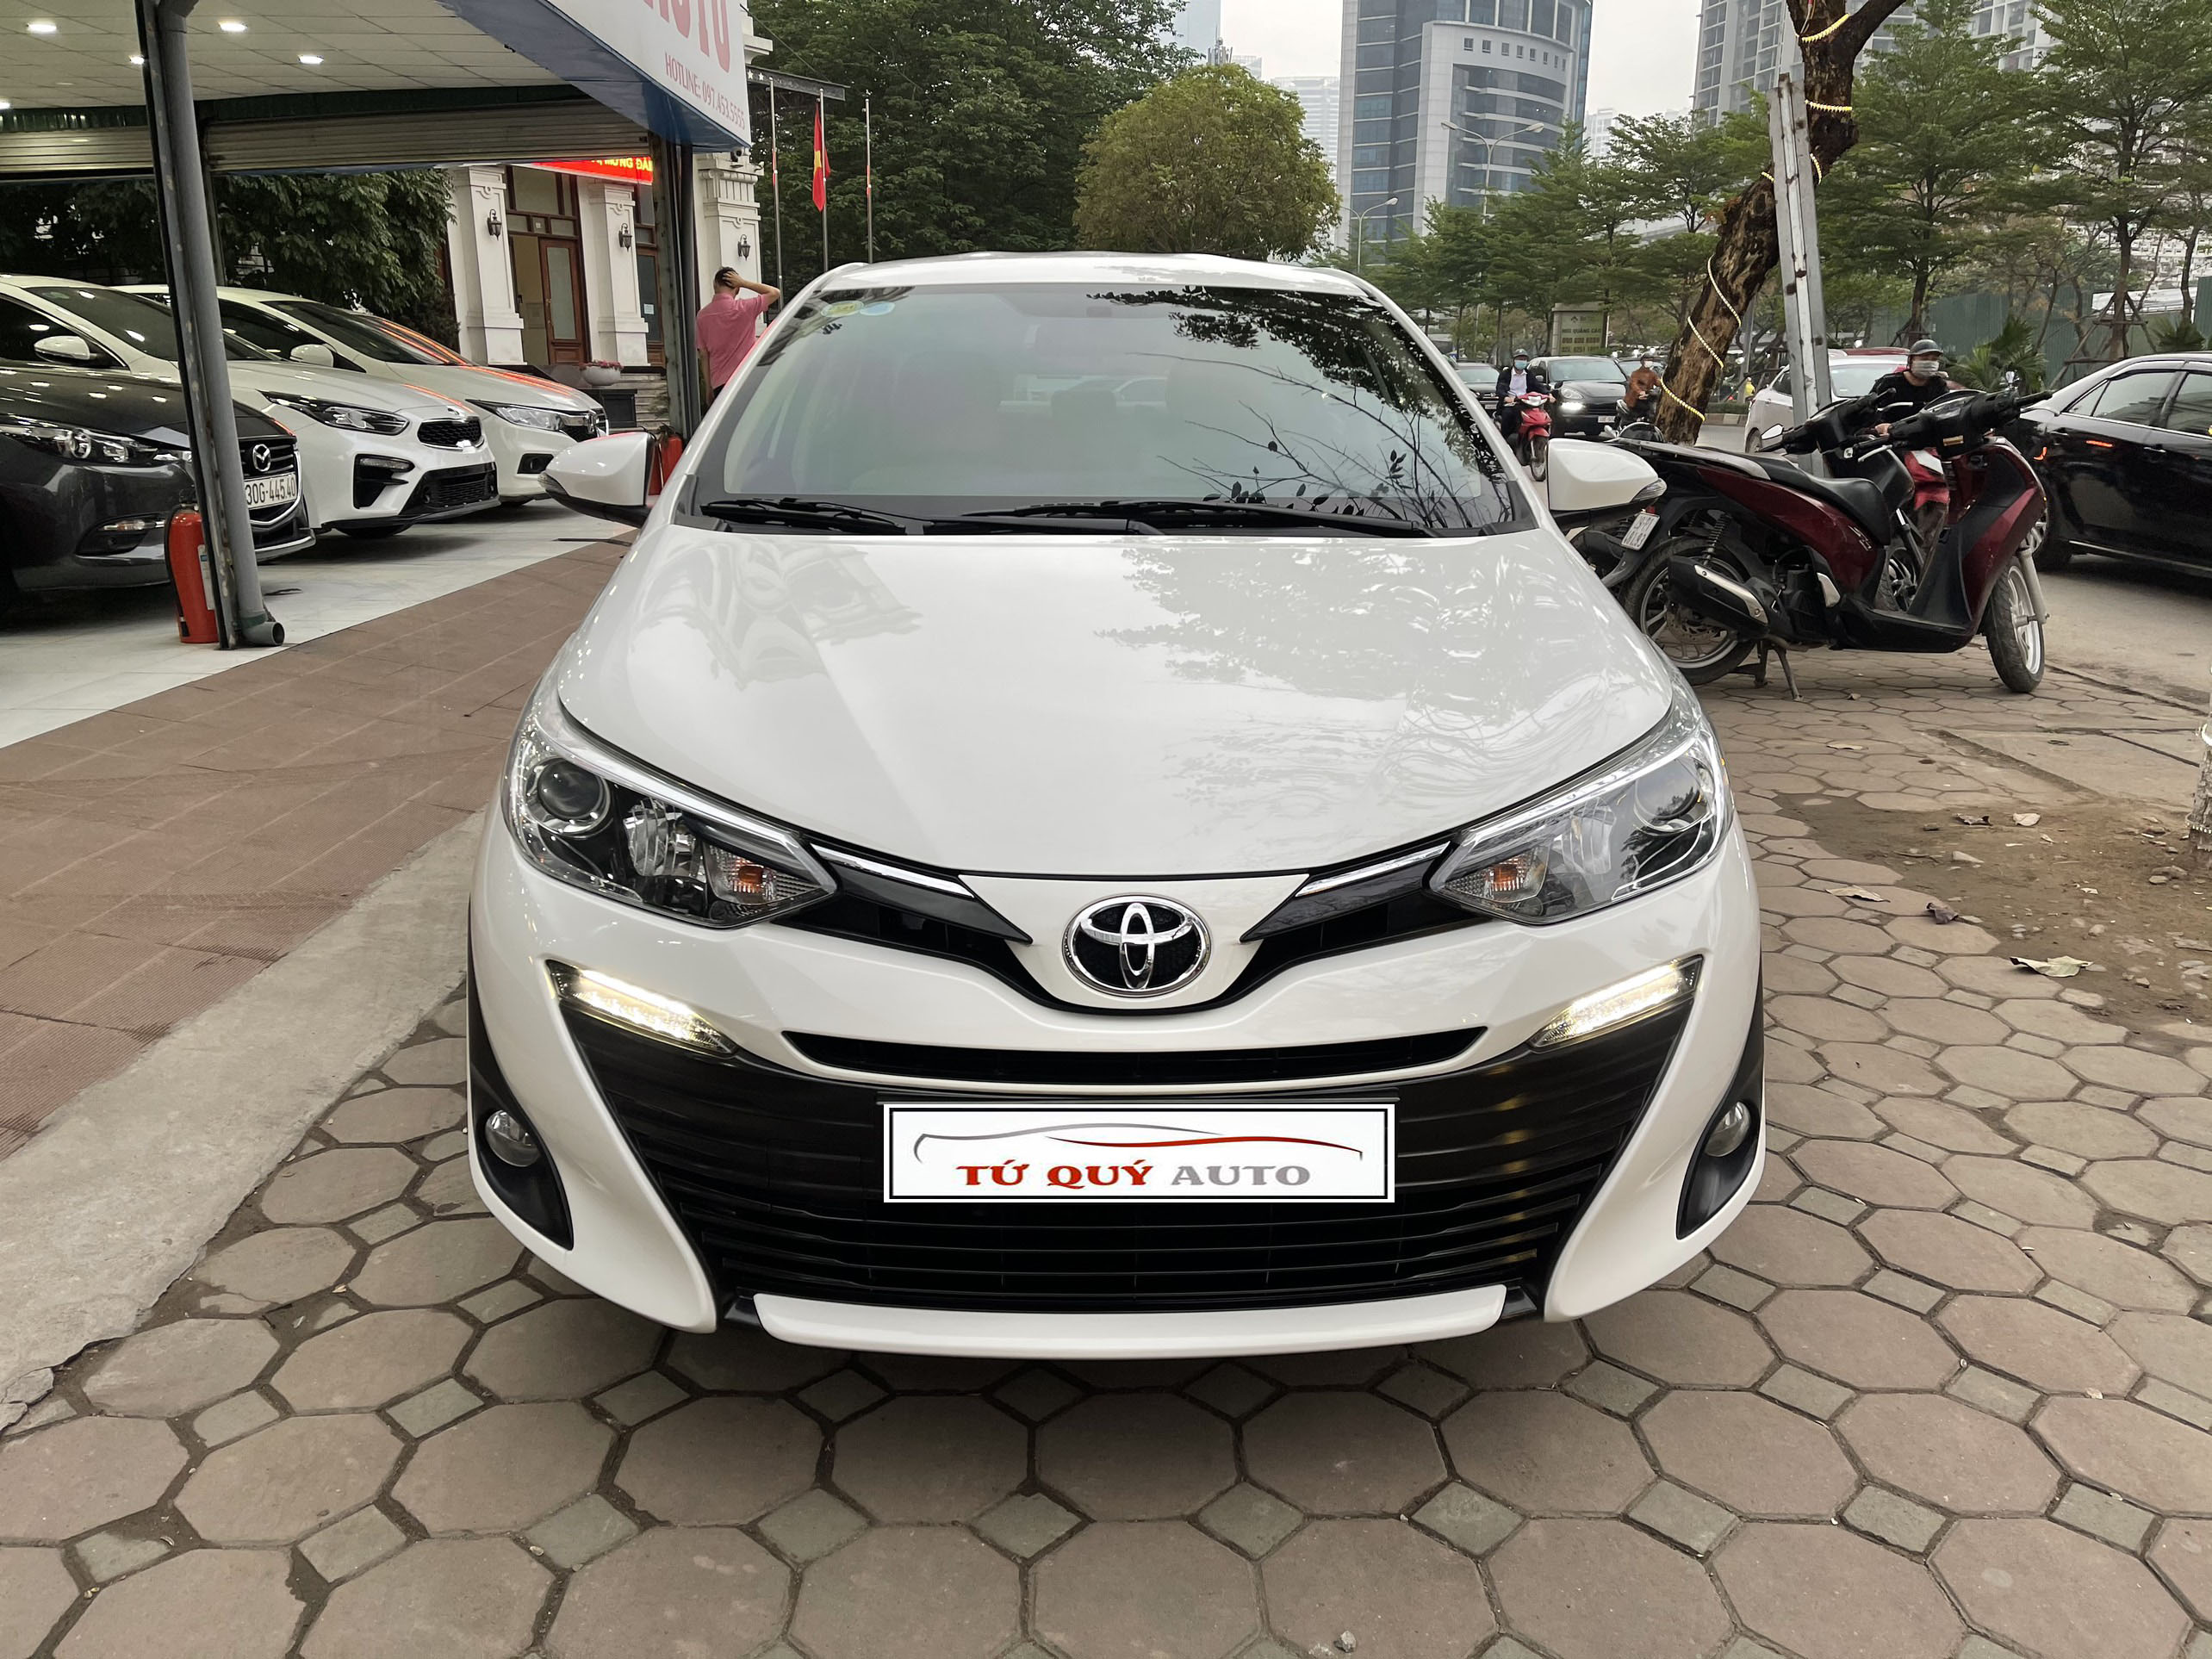 Xe Toyota Vios 1.5G 2019 - Trắng